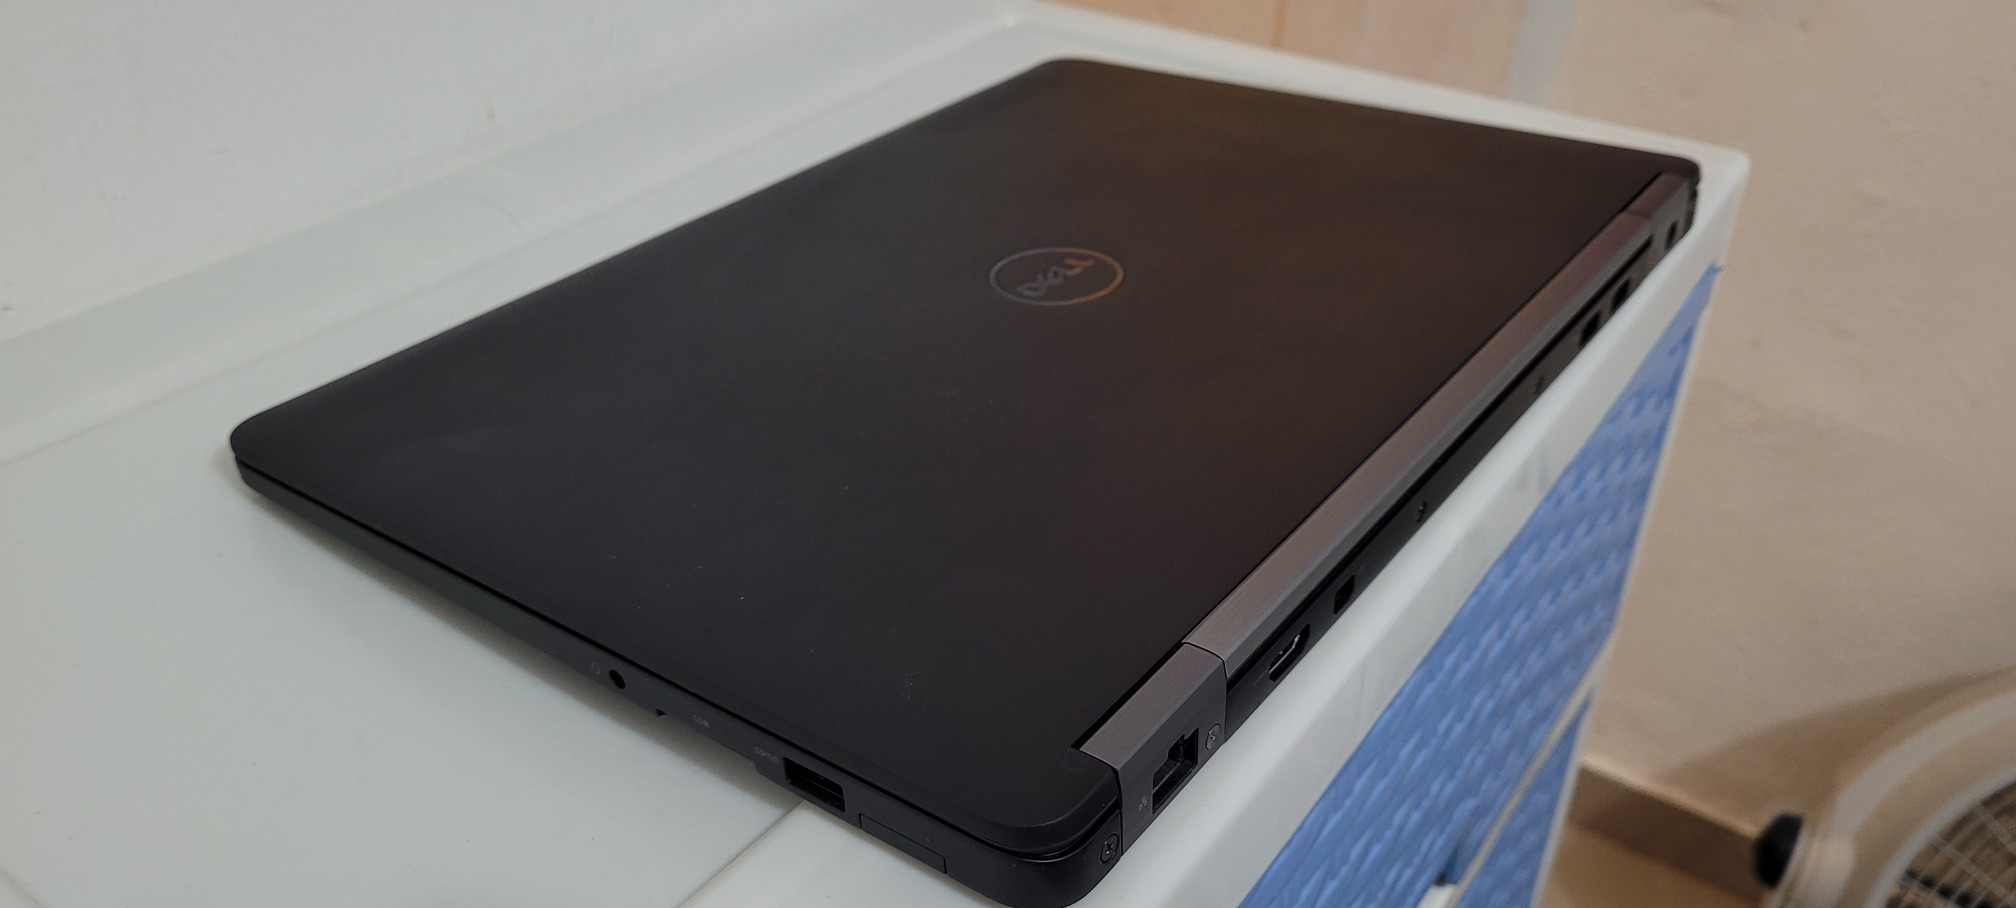 computadoras y laptops - Dell 7480 14 Pulg Core i5 7ma Gen Ram 8gb ddr4 Disco 128gb SSD hdmi 2